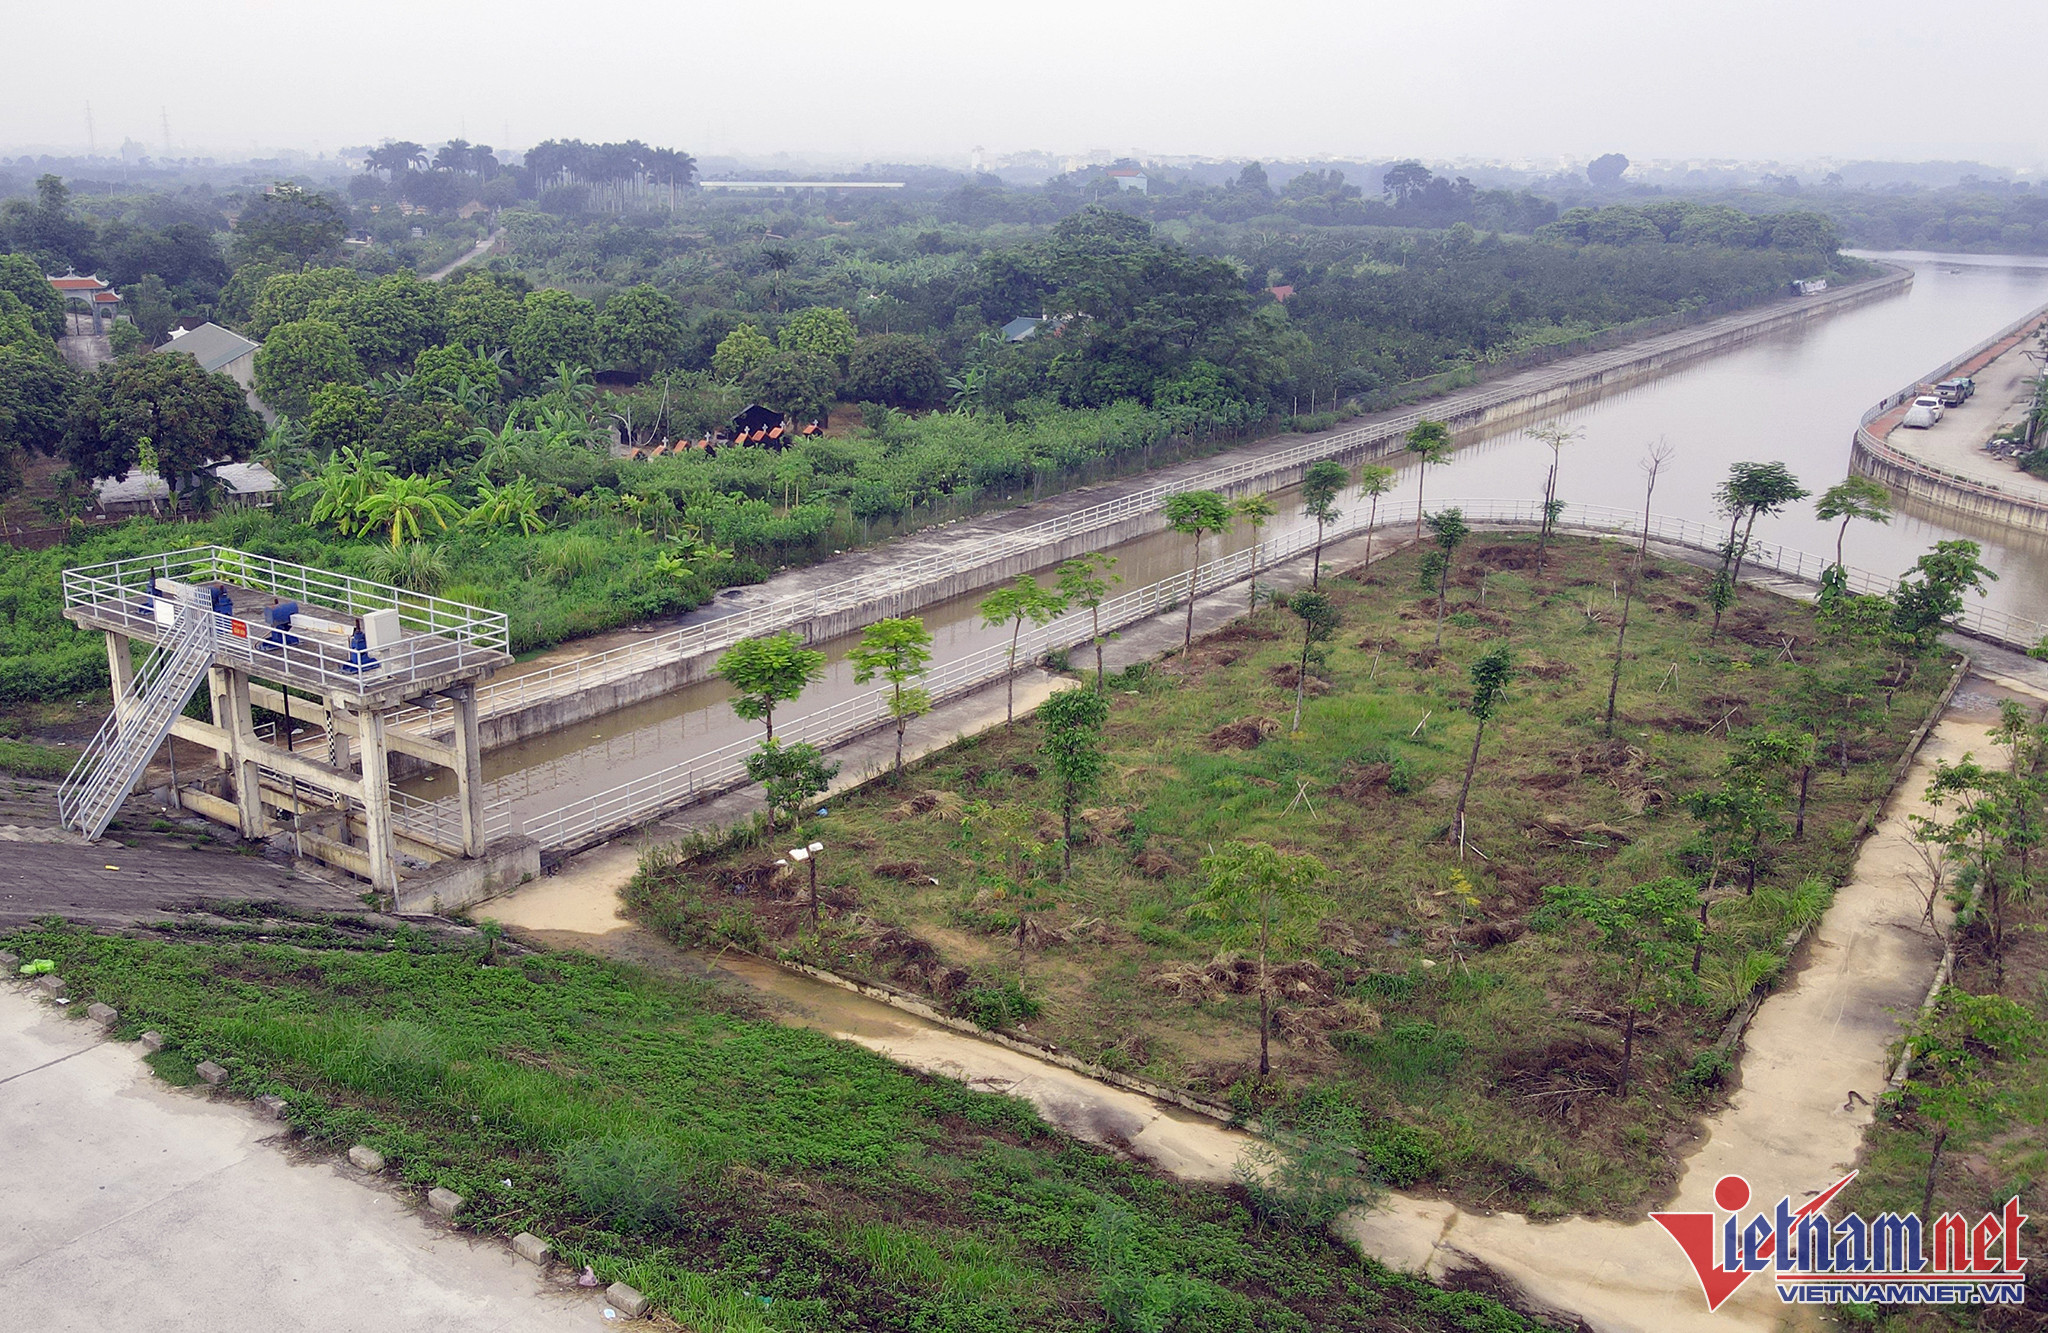 Hệ thống kênh dẫn nước từ Trạm bơm Yên Nghĩa ra sông Đáy cũng đã được hoàn thiện từ nhiều năm nay.